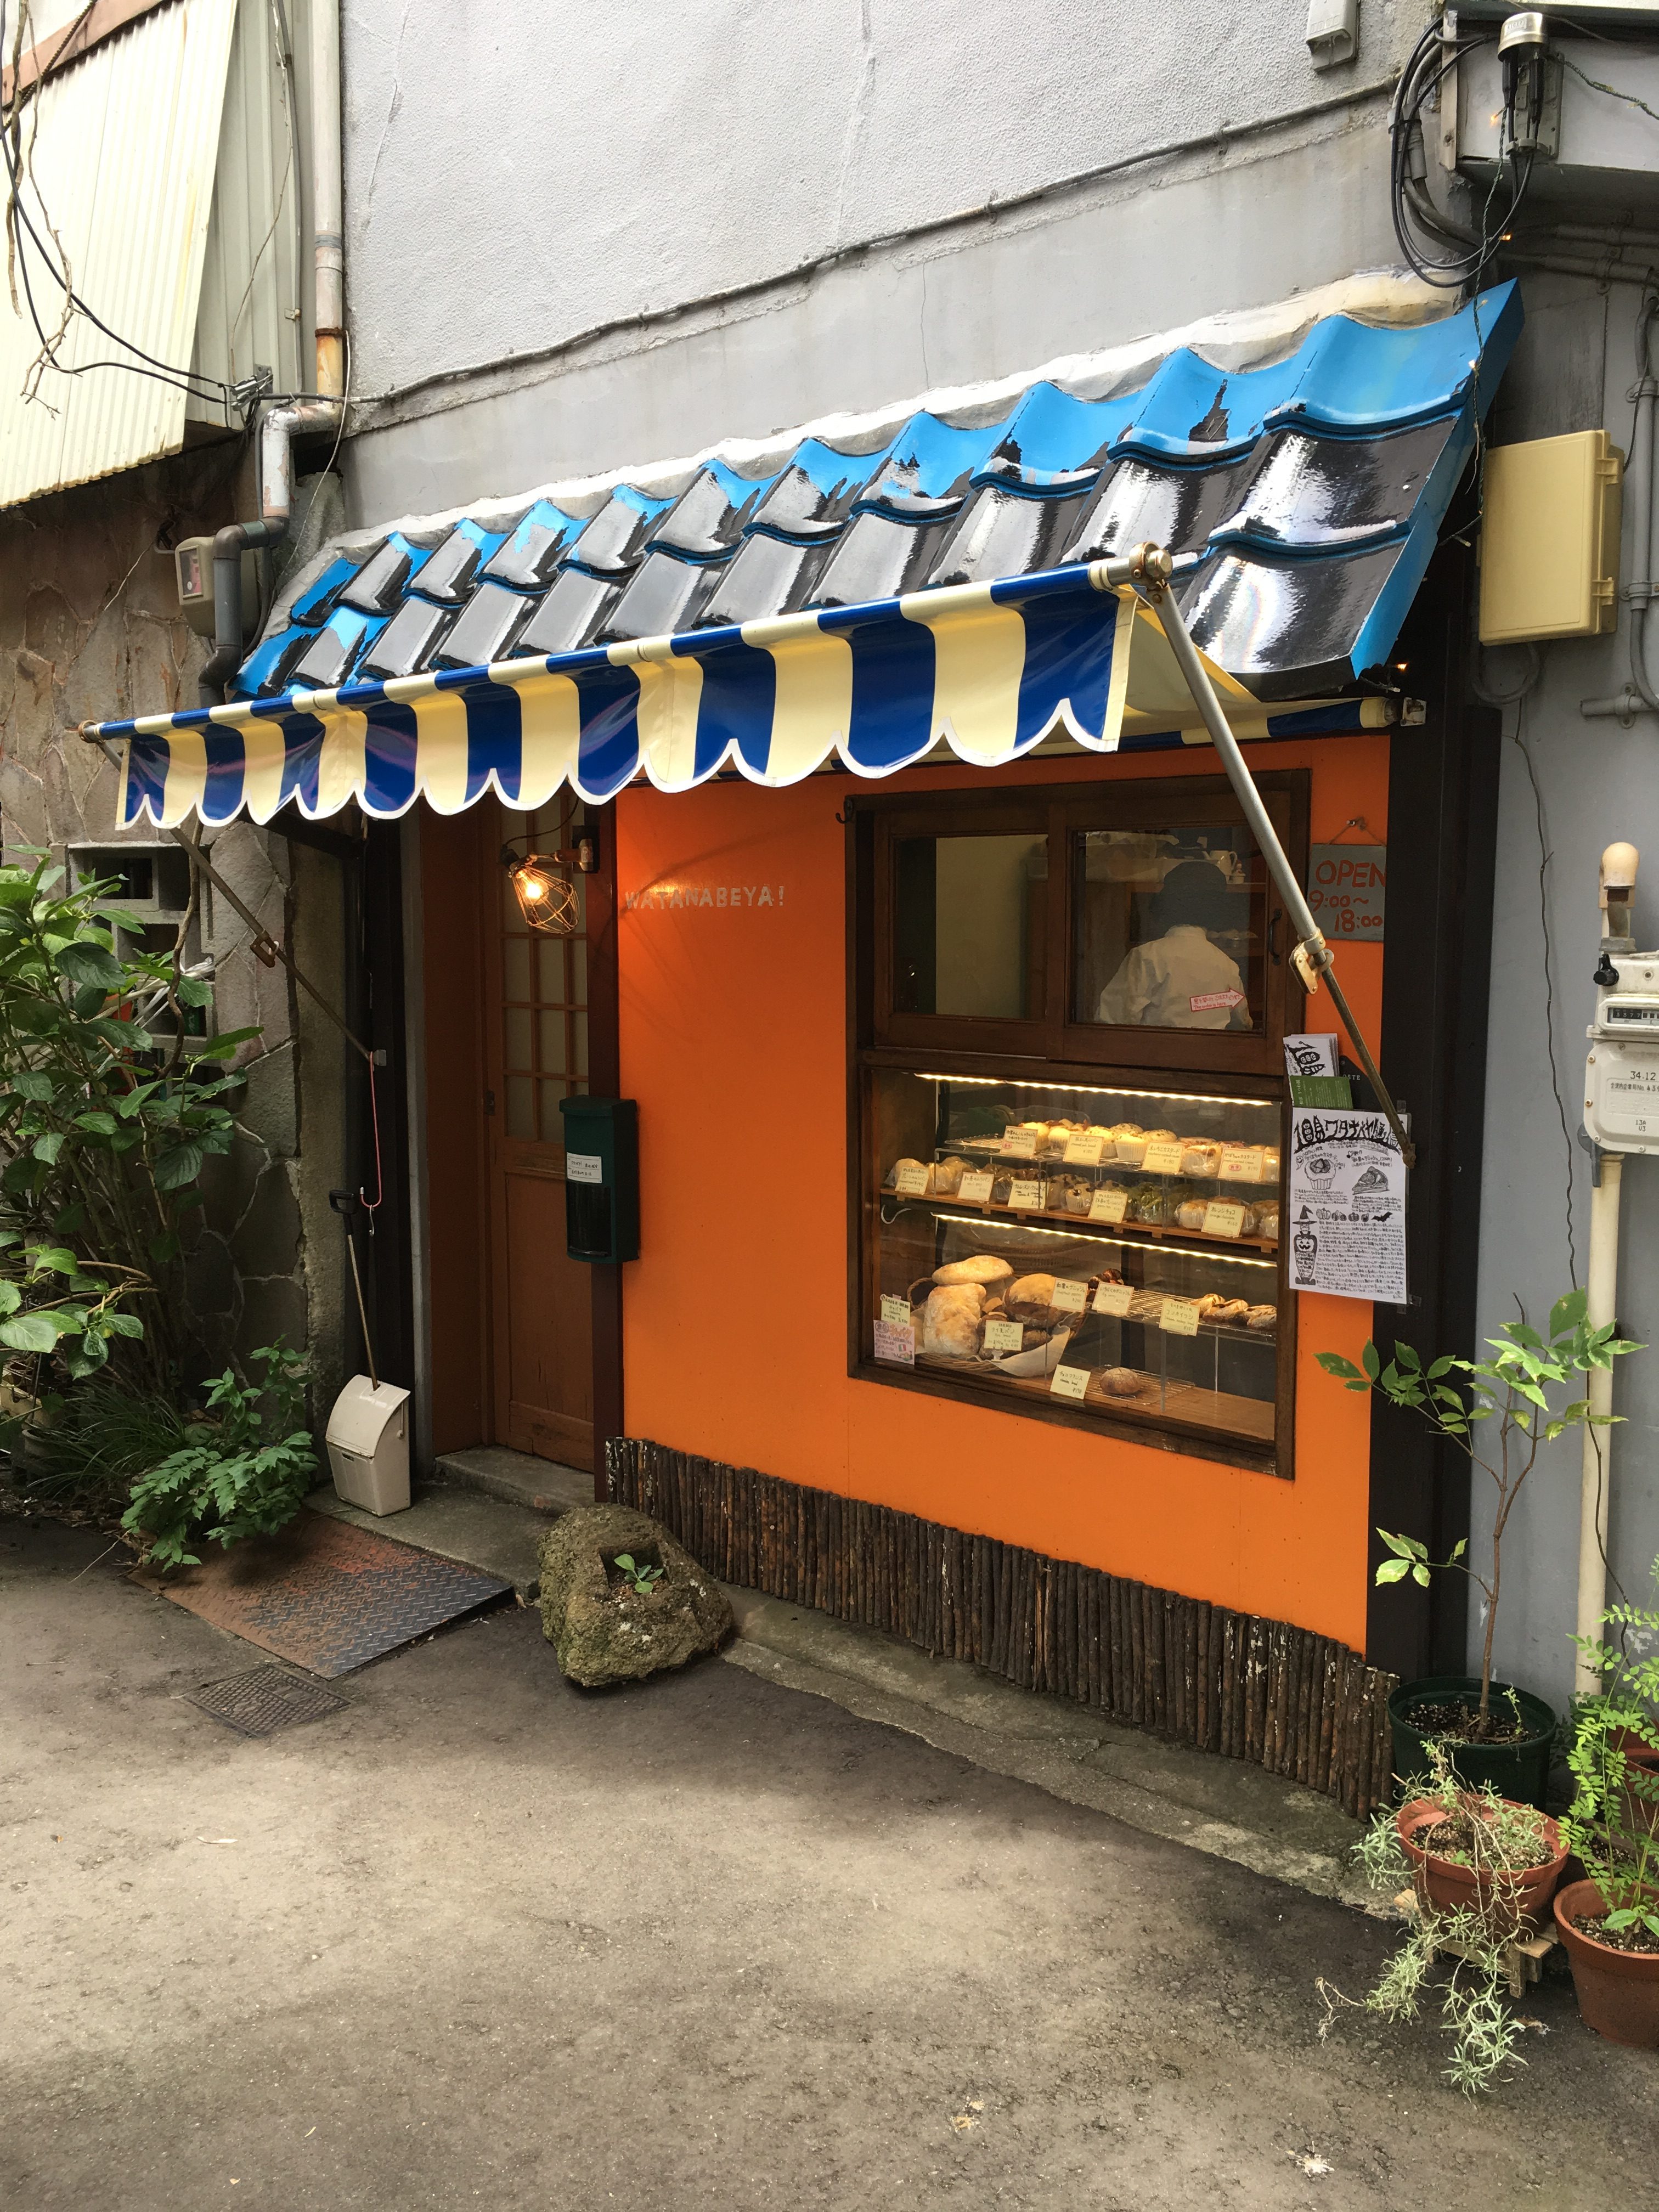 Watanabeya Pastry Shop near Oyama Shrine in Kanazawa, Japan, by Aaron Mannino